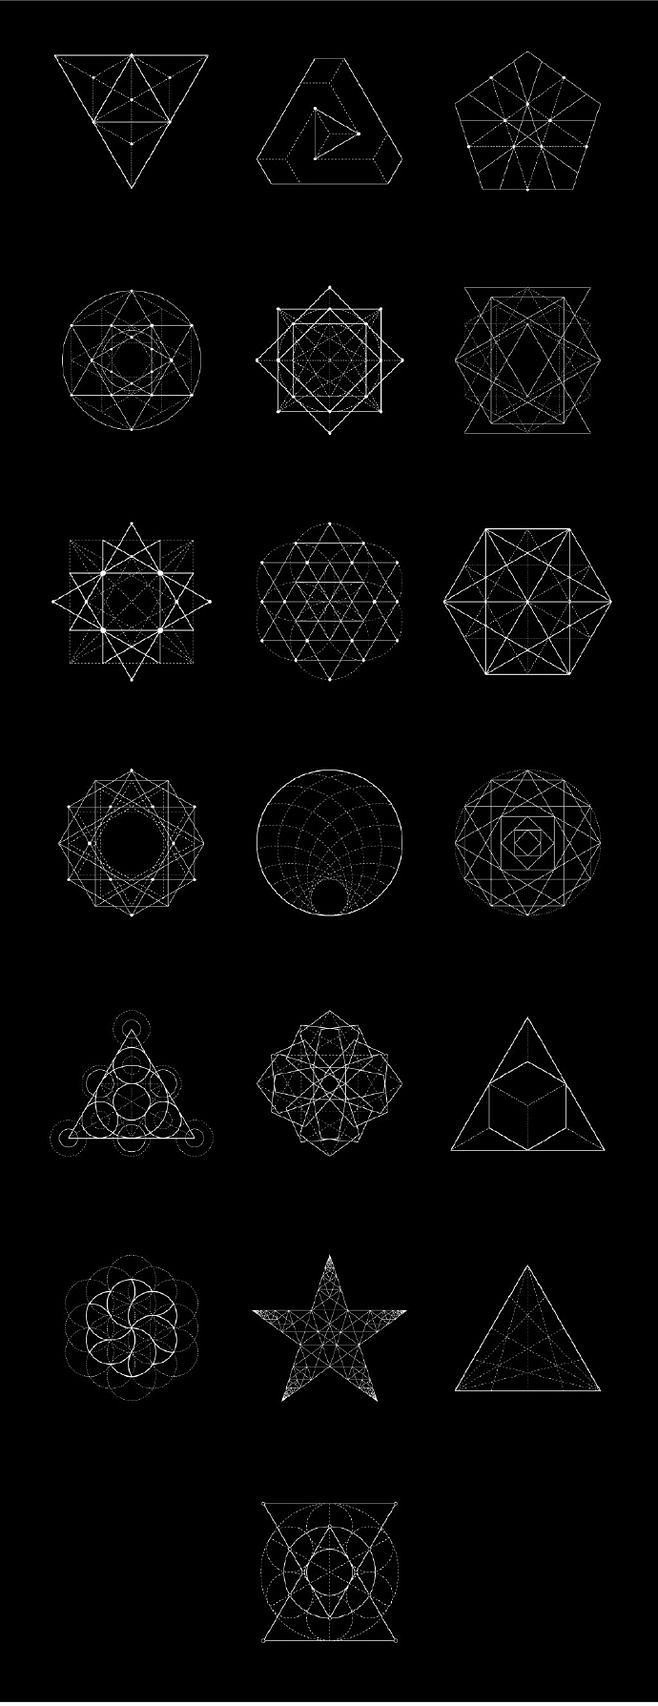 200多种几何图形的组合形式简单的三角形圆形矩形等几何图形组合可以